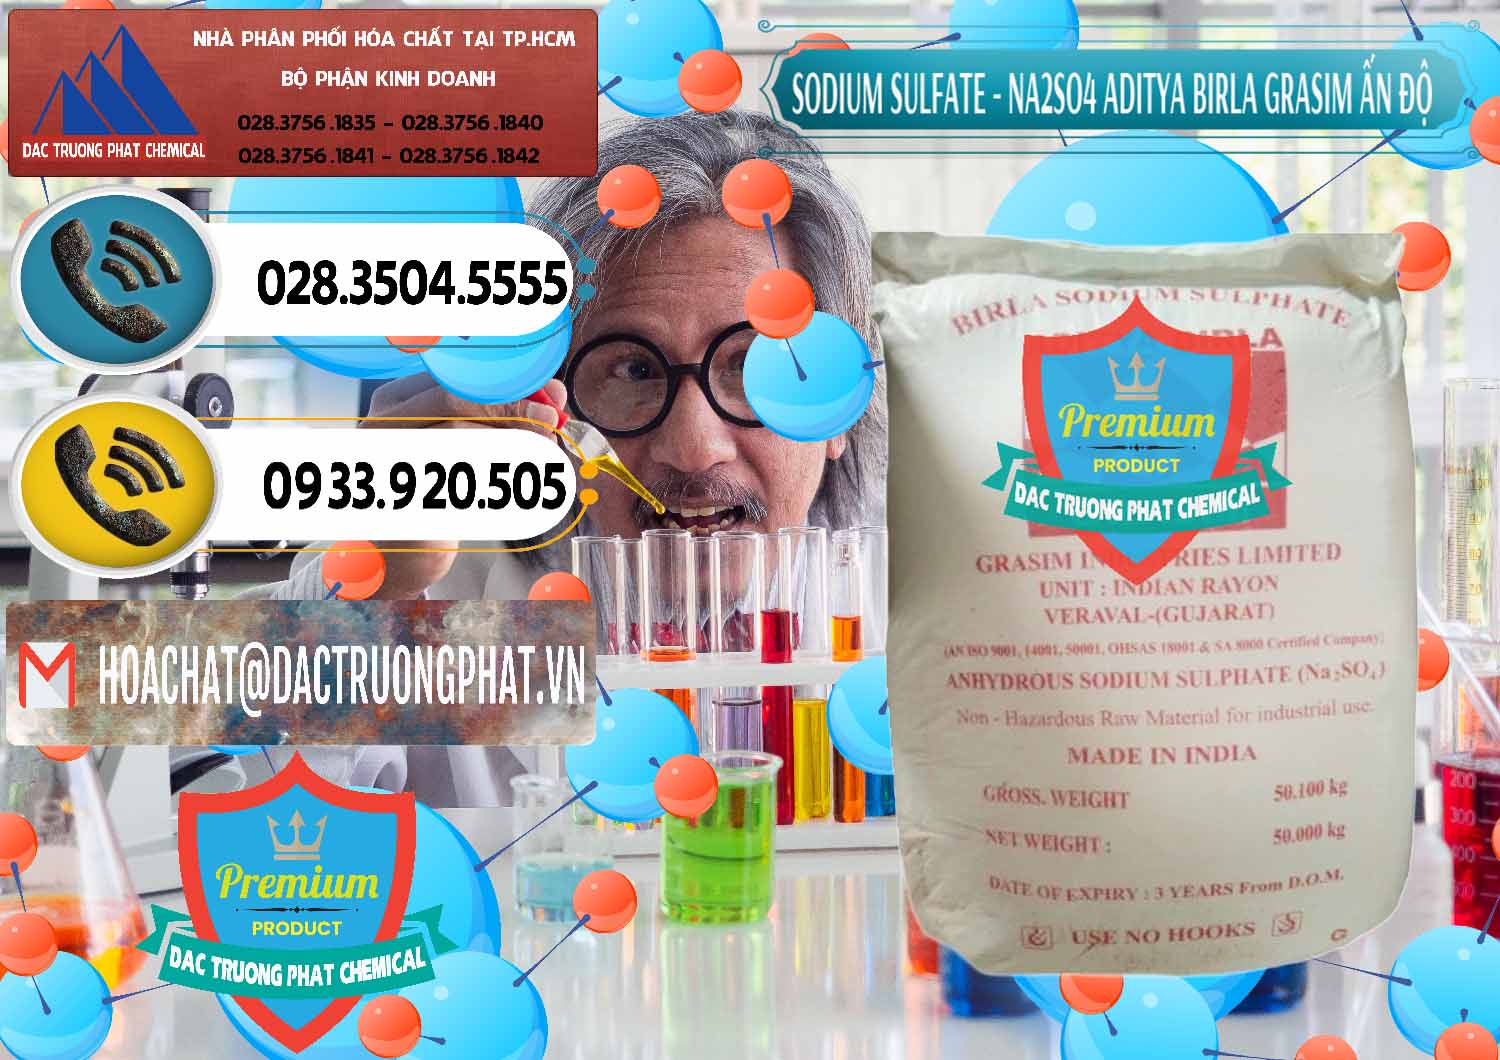 Công ty chuyên nhập khẩu ( bán ) Sodium Sulphate - Muối Sunfat Na2SO4 Grasim Ấn Độ India - 0356 - Công ty bán và cung cấp hóa chất tại TP.HCM - hoachatdetnhuom.vn